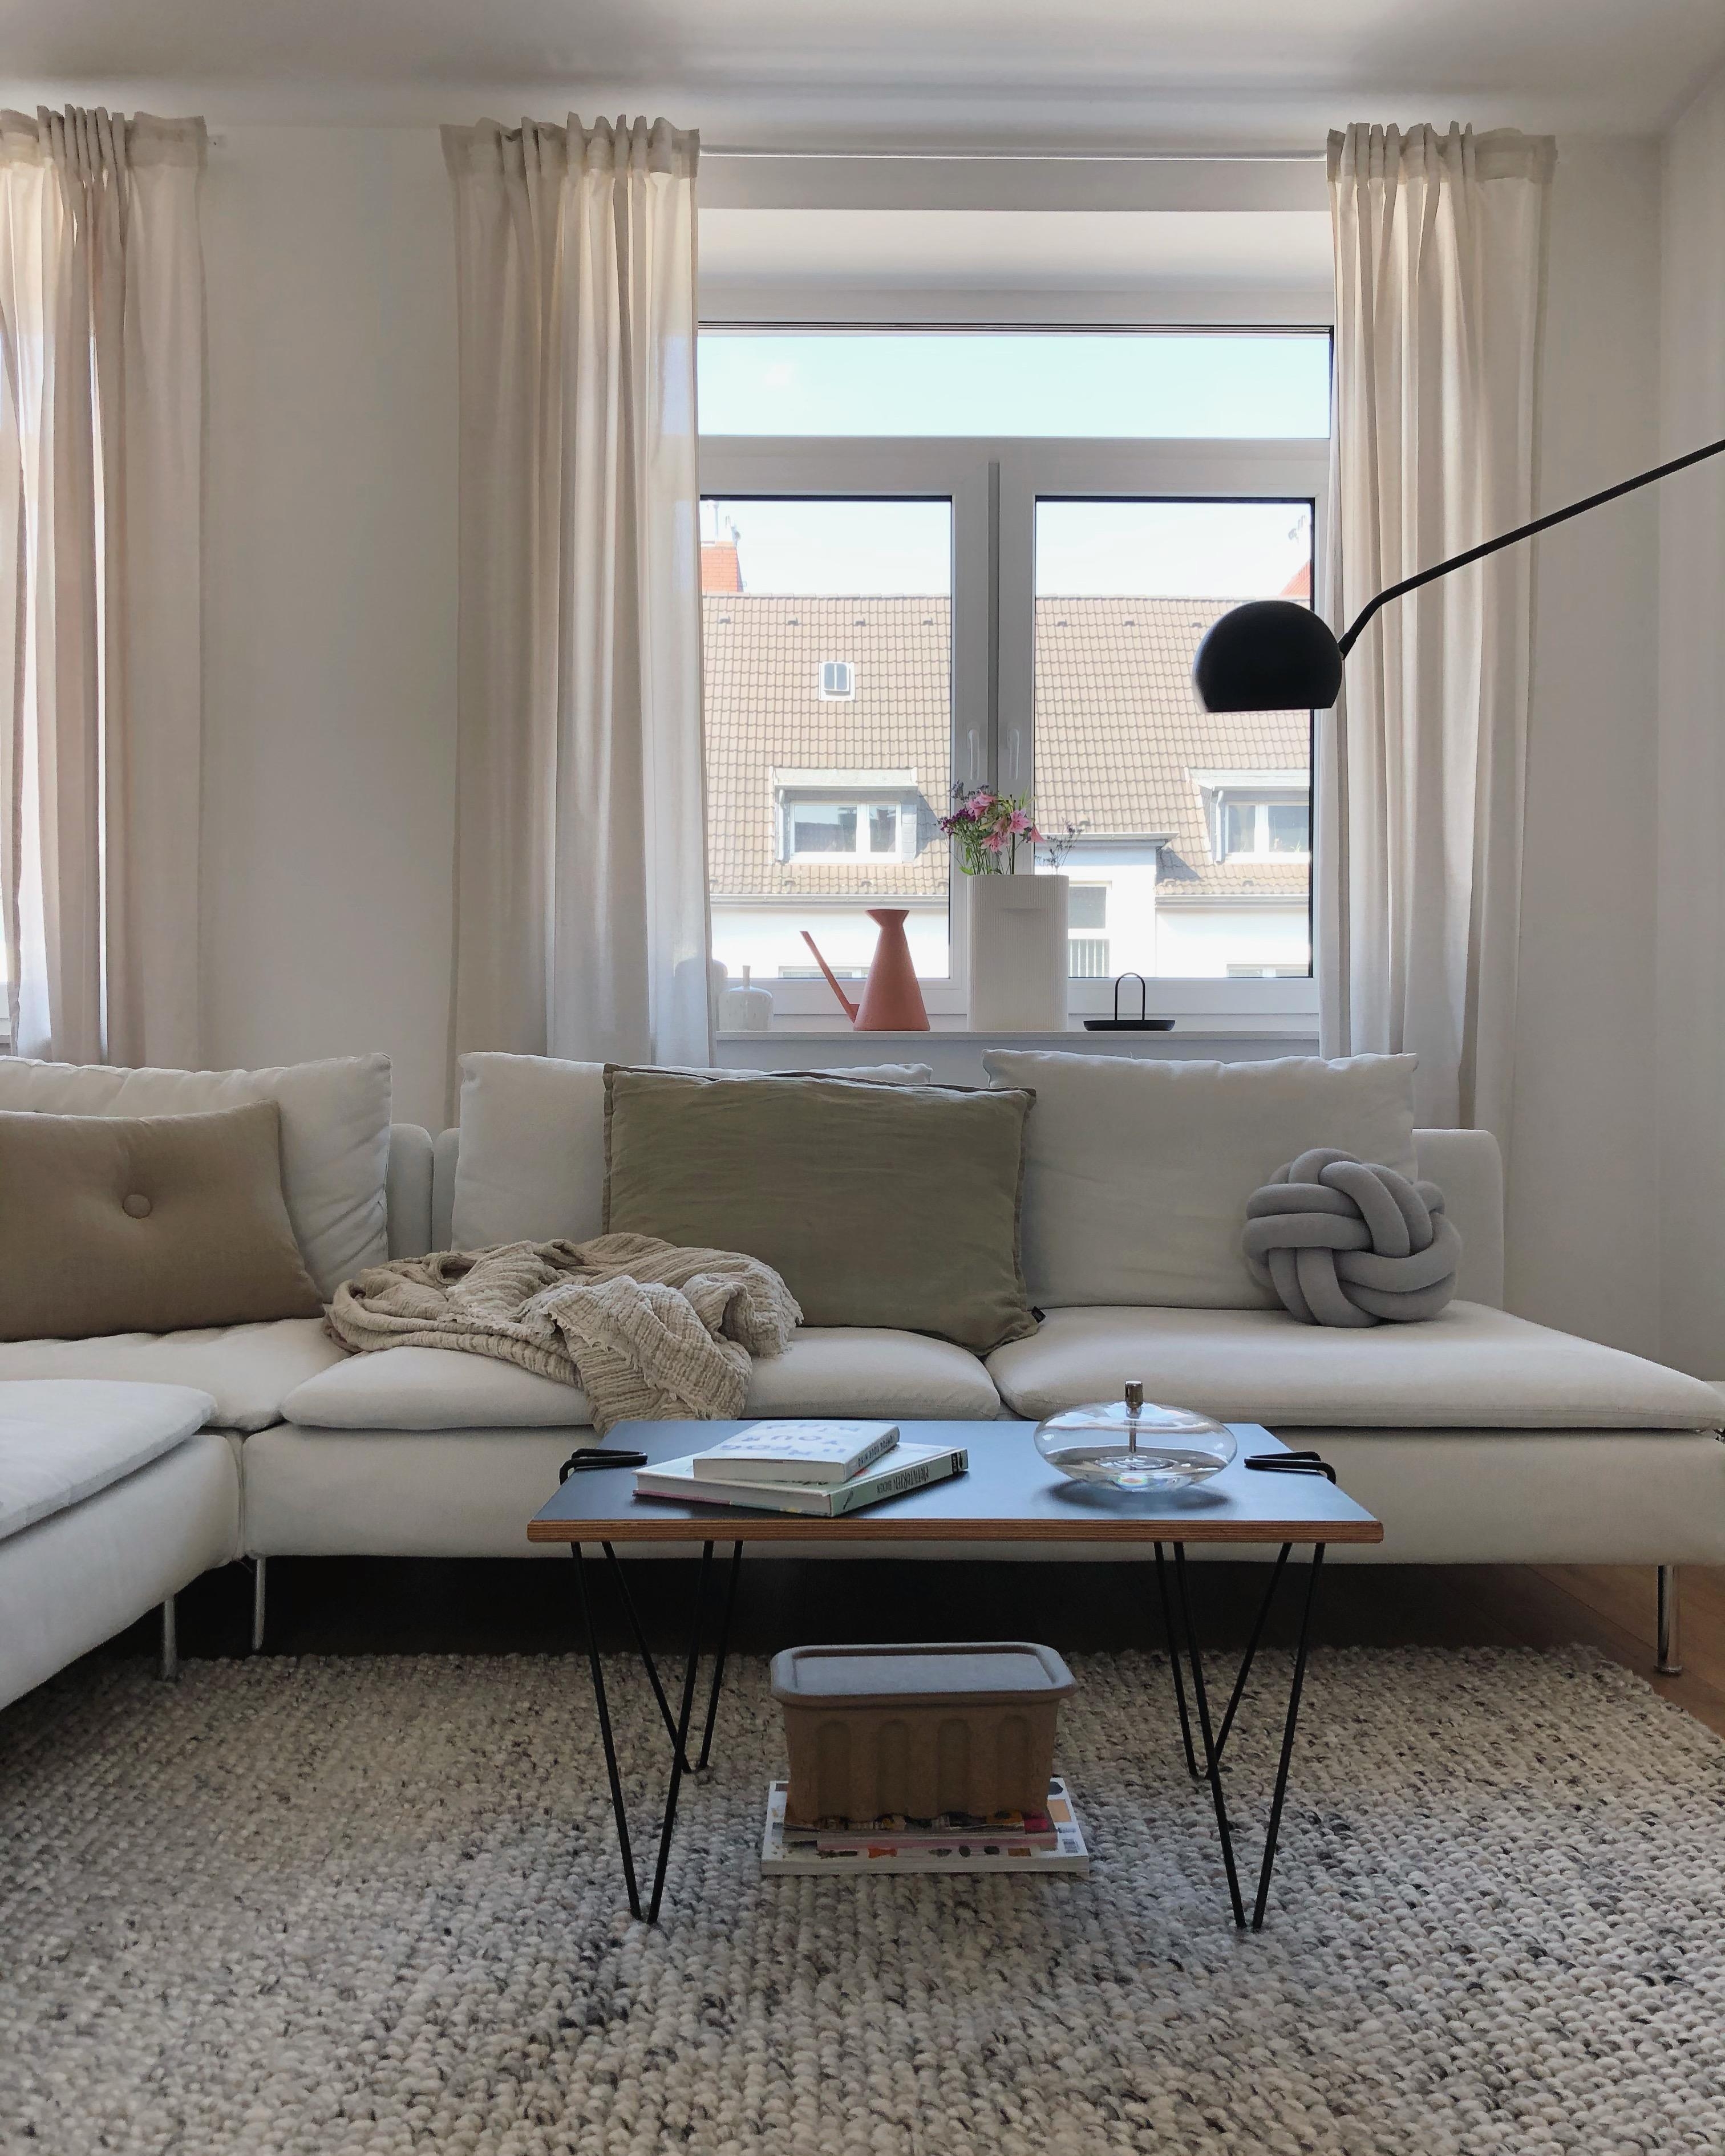 #nordichome #wohnzimmer #livingroom #fensterdeko #dekoidee #hygge #skandi #interior #home #couchstyle